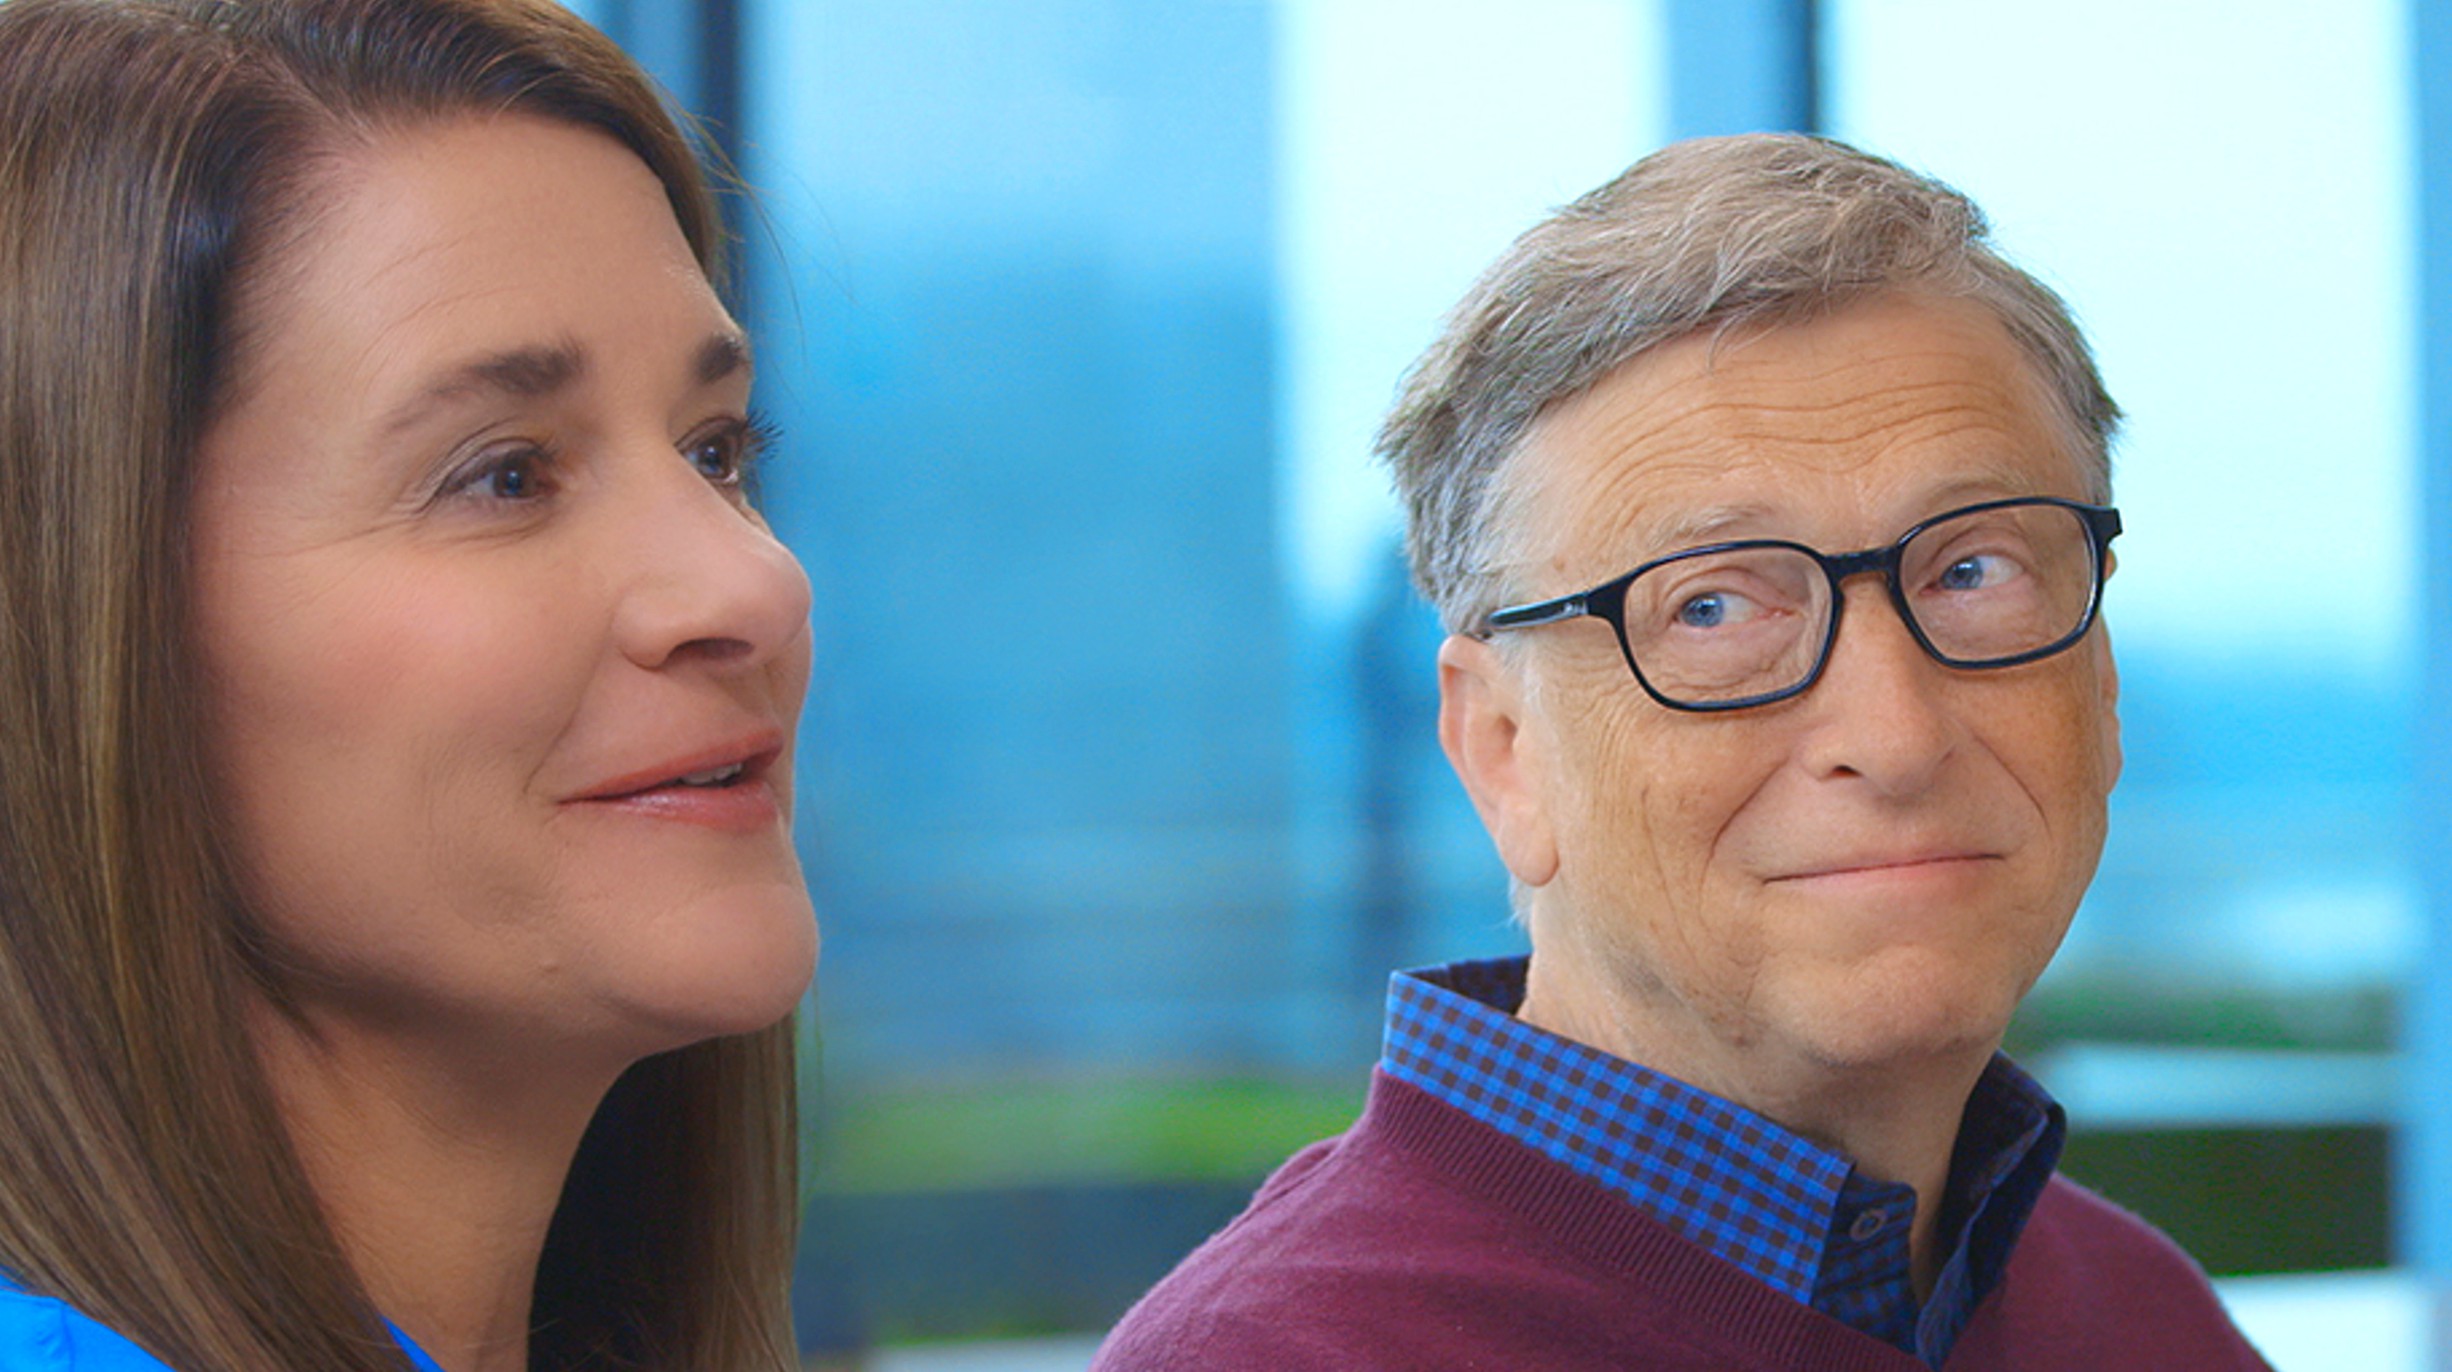 Bill Gates pasó una hora respondiendo preguntas en Reddit y dijo que casarse con Melinda fue la mejor decisión de su vida. Crédito: Fundación Gates